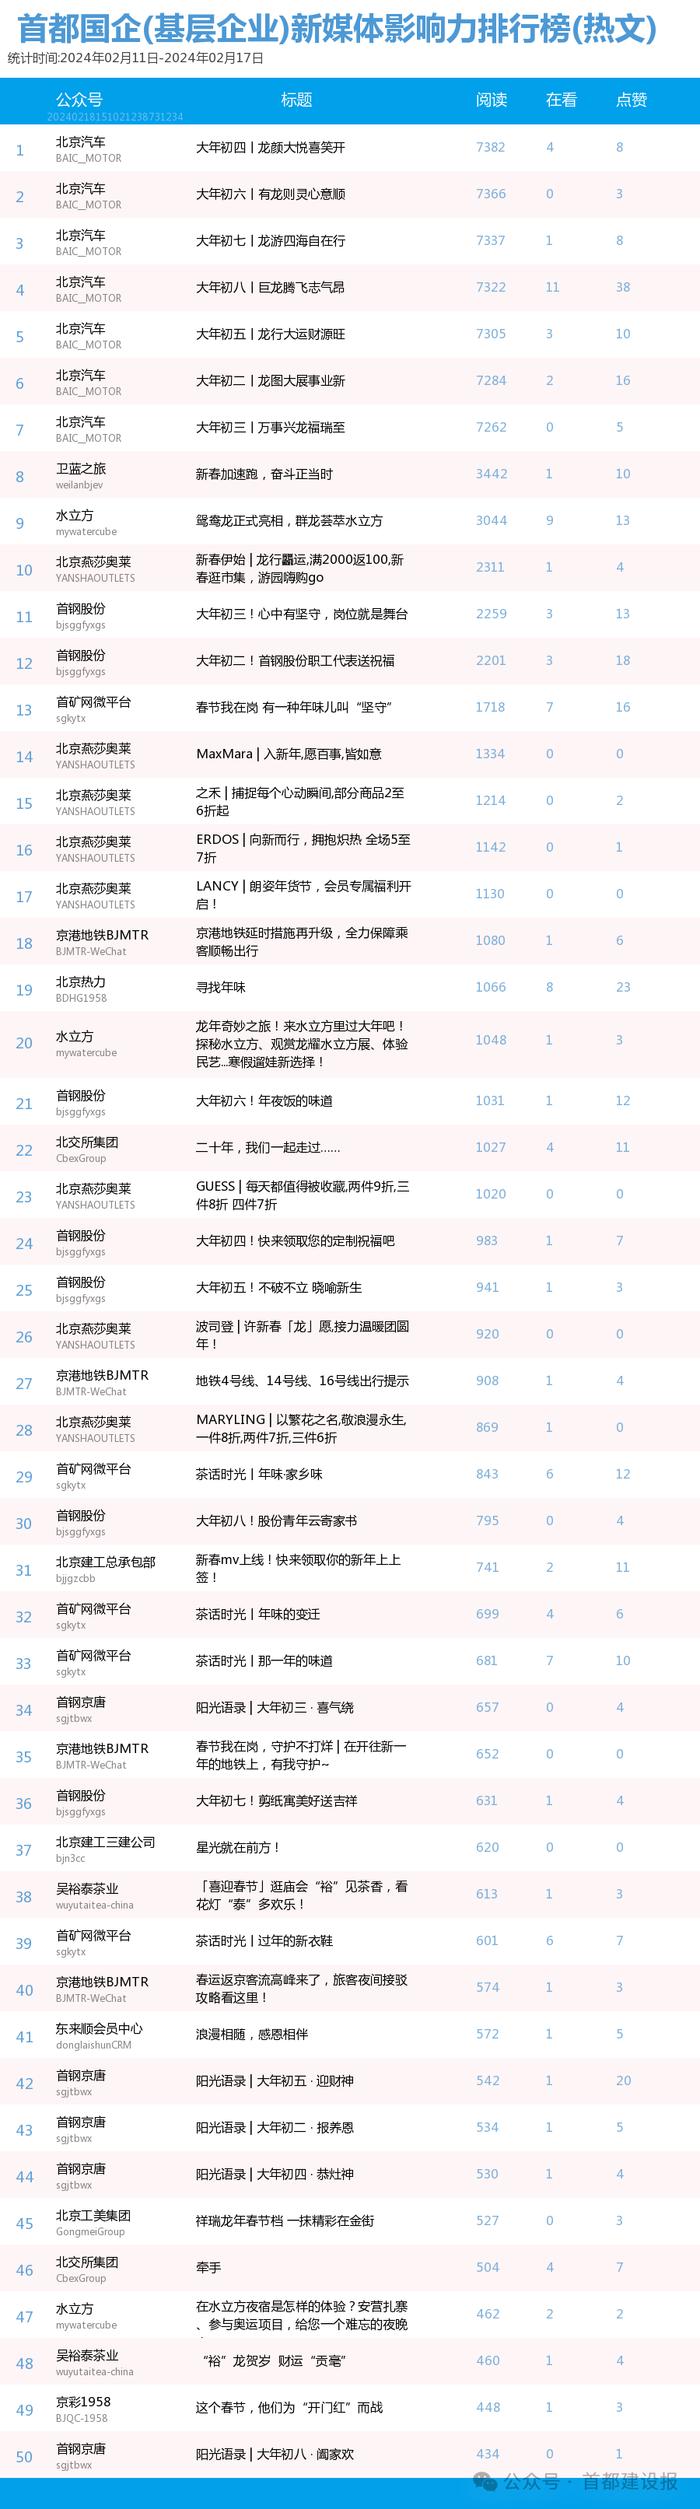 【北京国企新媒体影响力排行榜】2月周榜(2.4-2.10、2.11-2.17)第394、395期